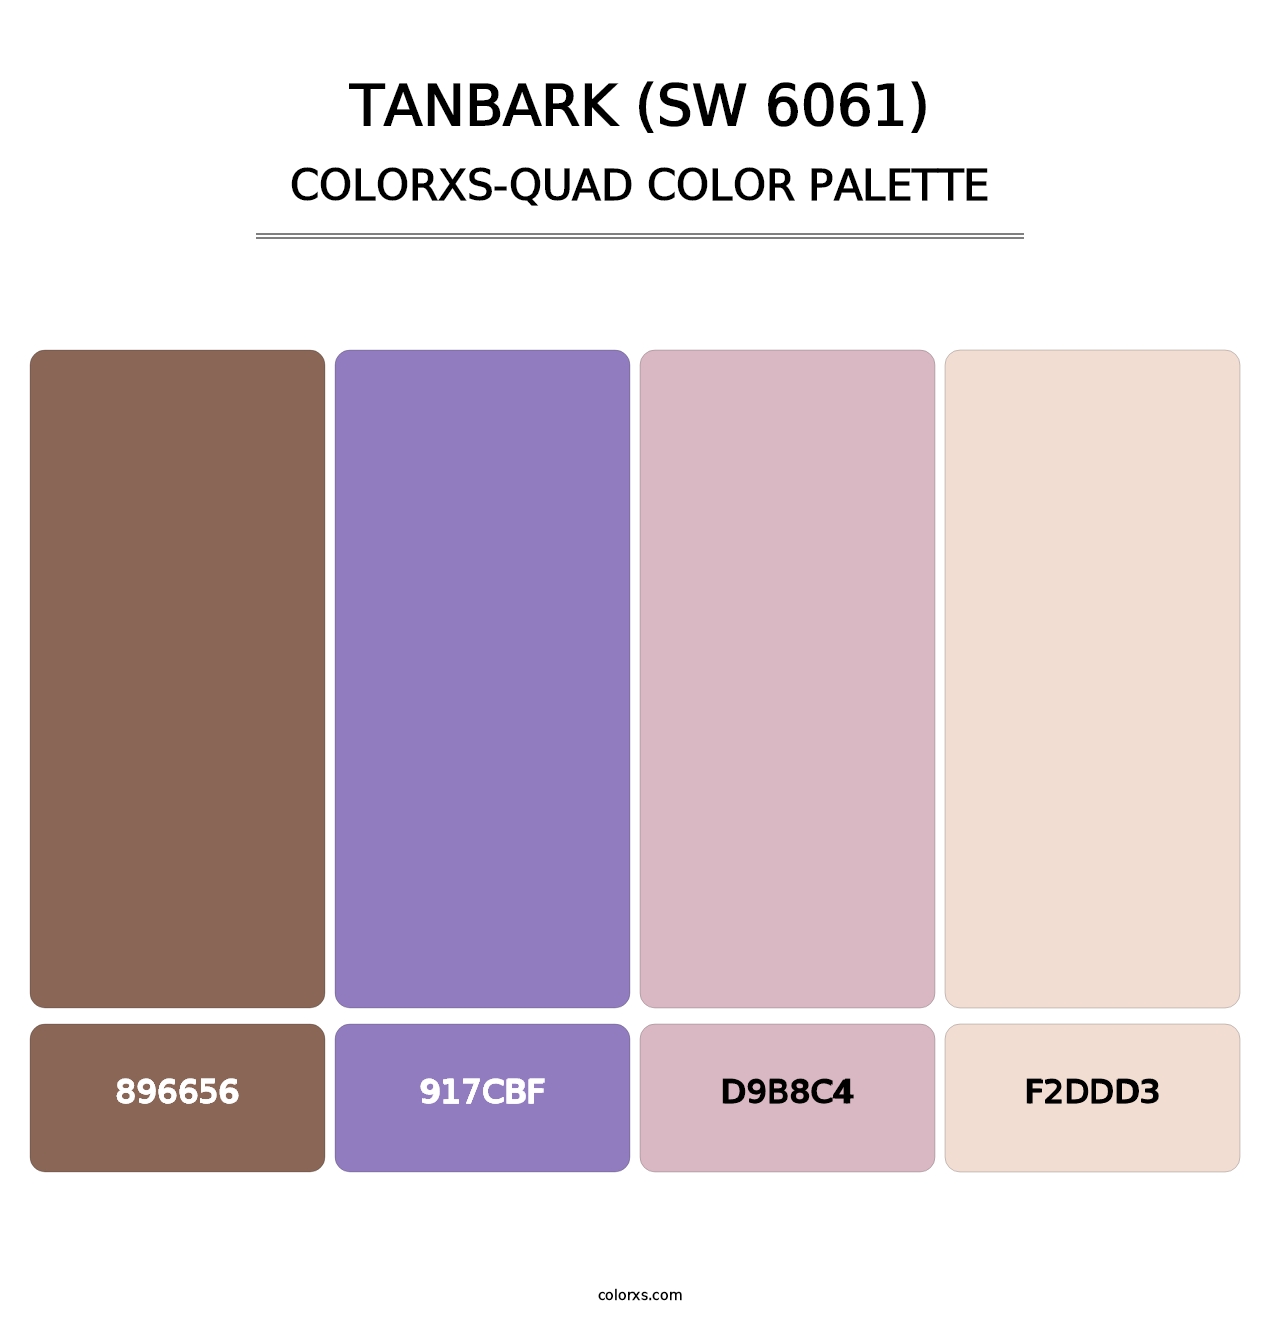 Tanbark (SW 6061) - Colorxs Quad Palette